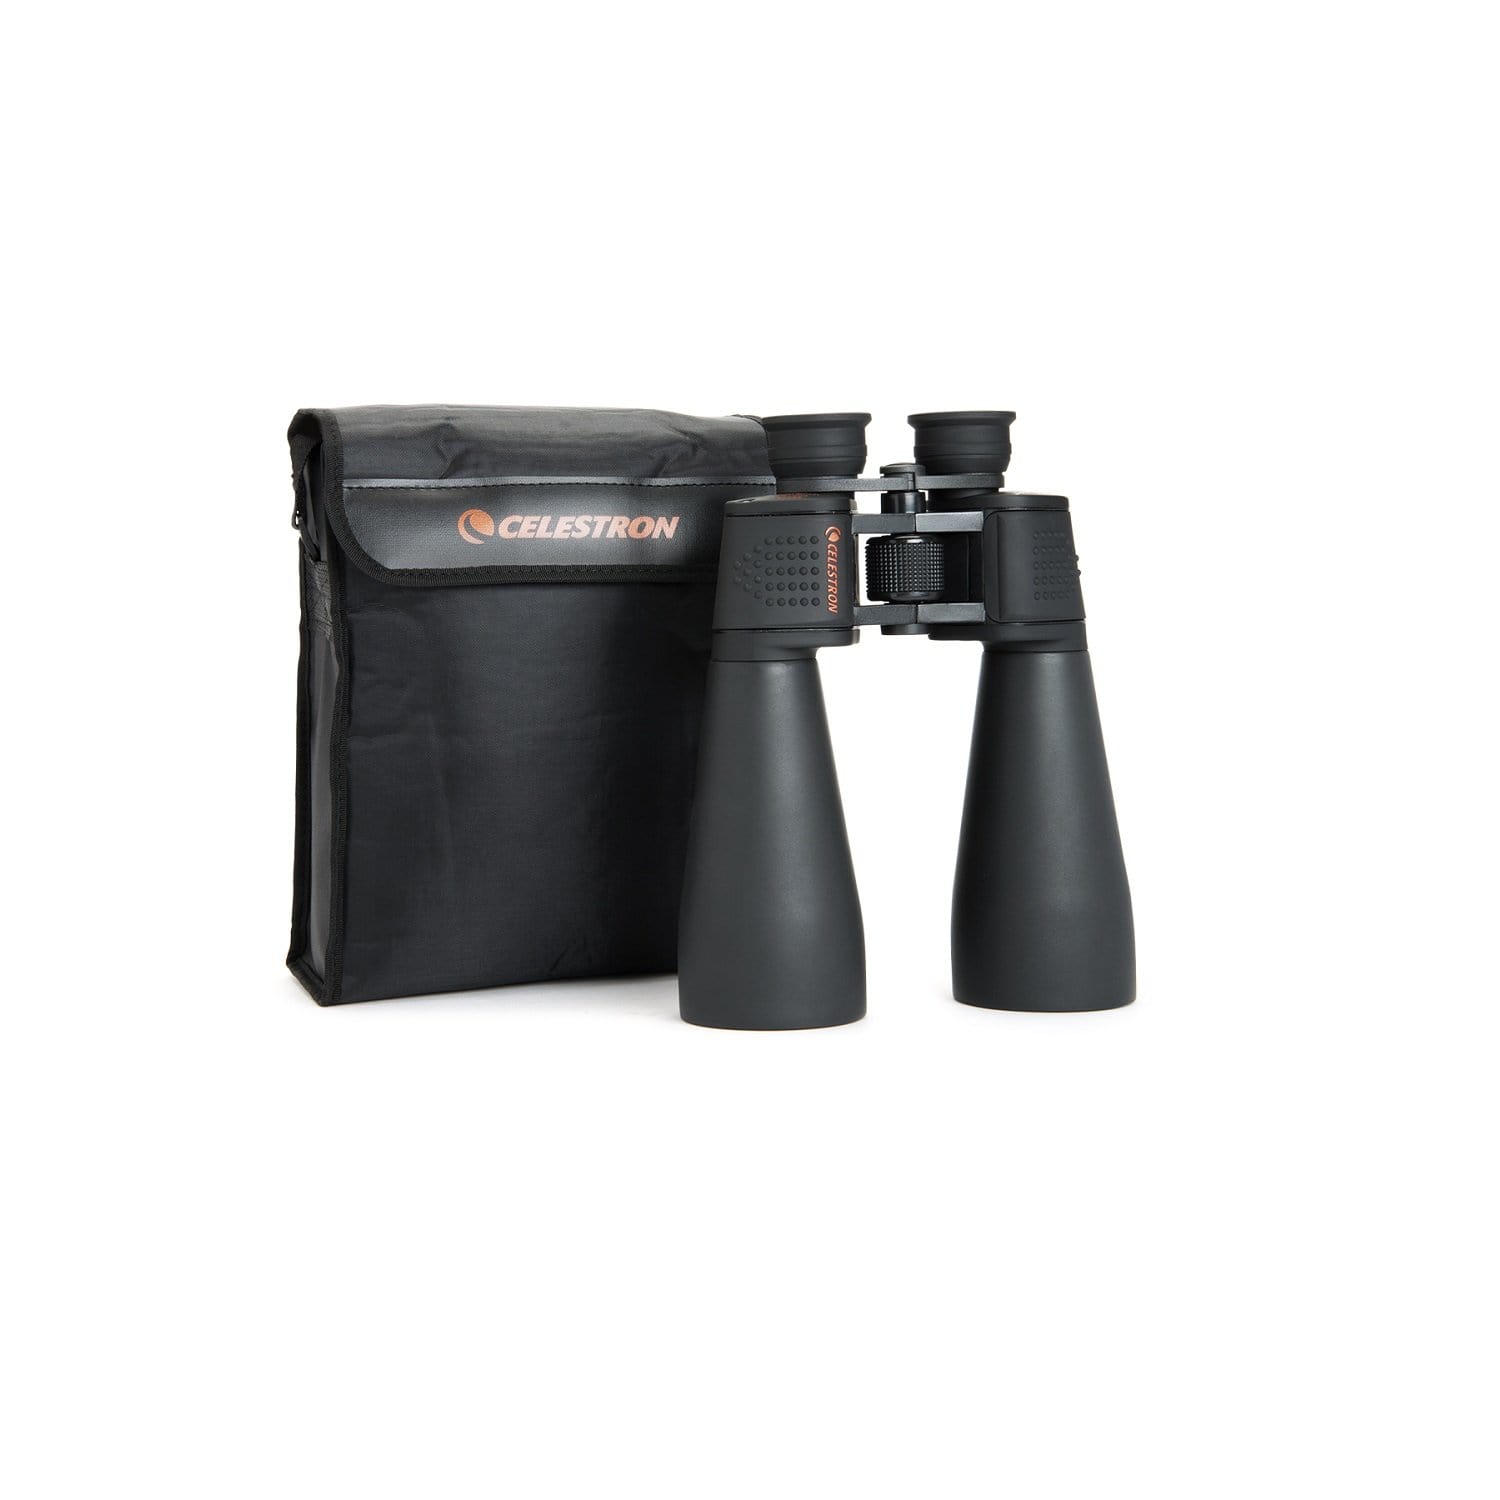 Celestron Optics : Binoculars/Monoculars Celestron SkyMaster 25x70 Binoculars